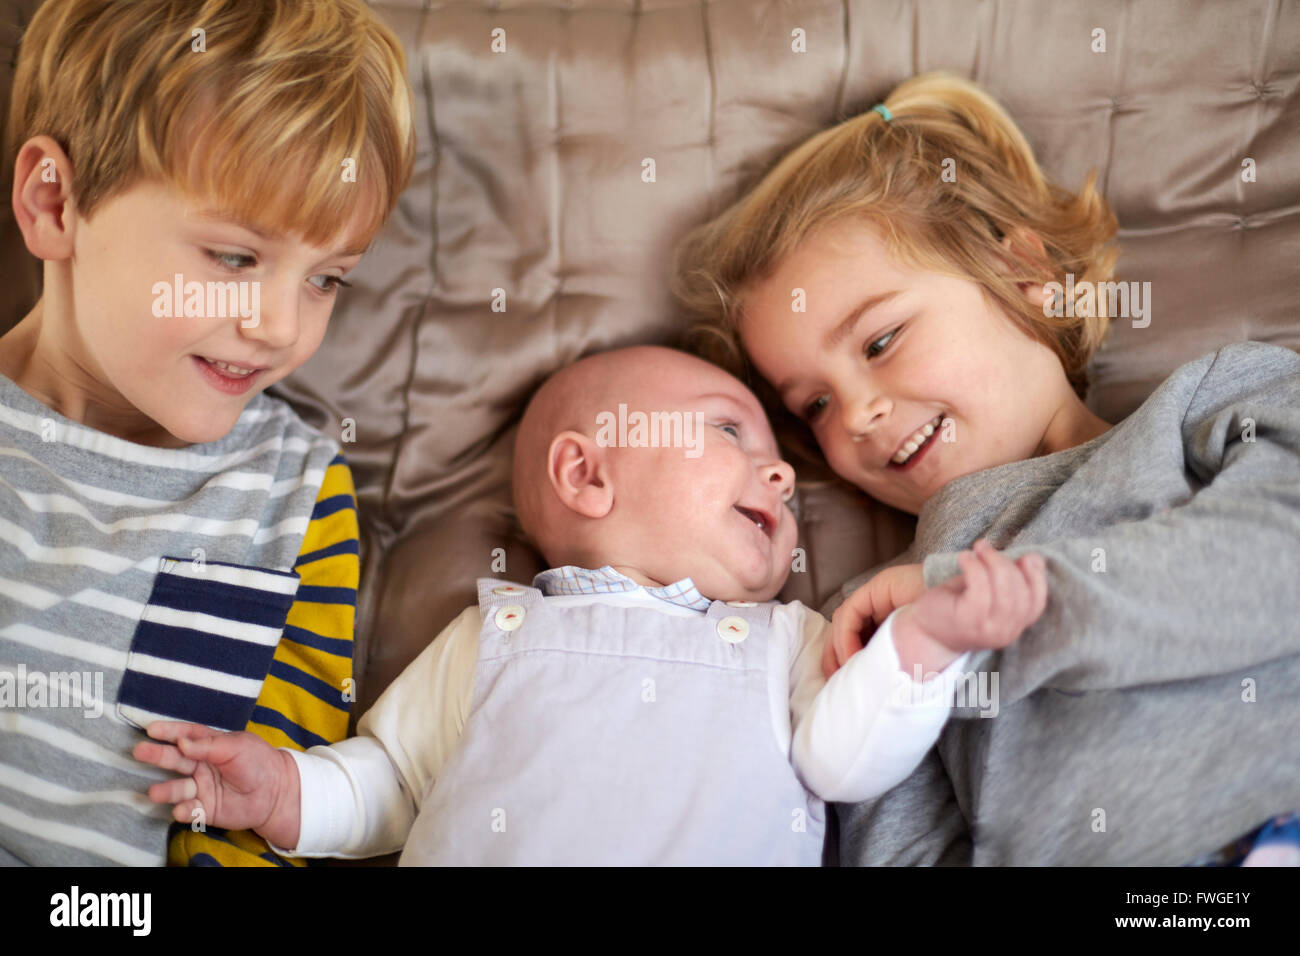 Drei Kinder auf einem Bett, einem jungen und Mädchen mit einem Baby zwischen ihnen liegen. Stockfoto